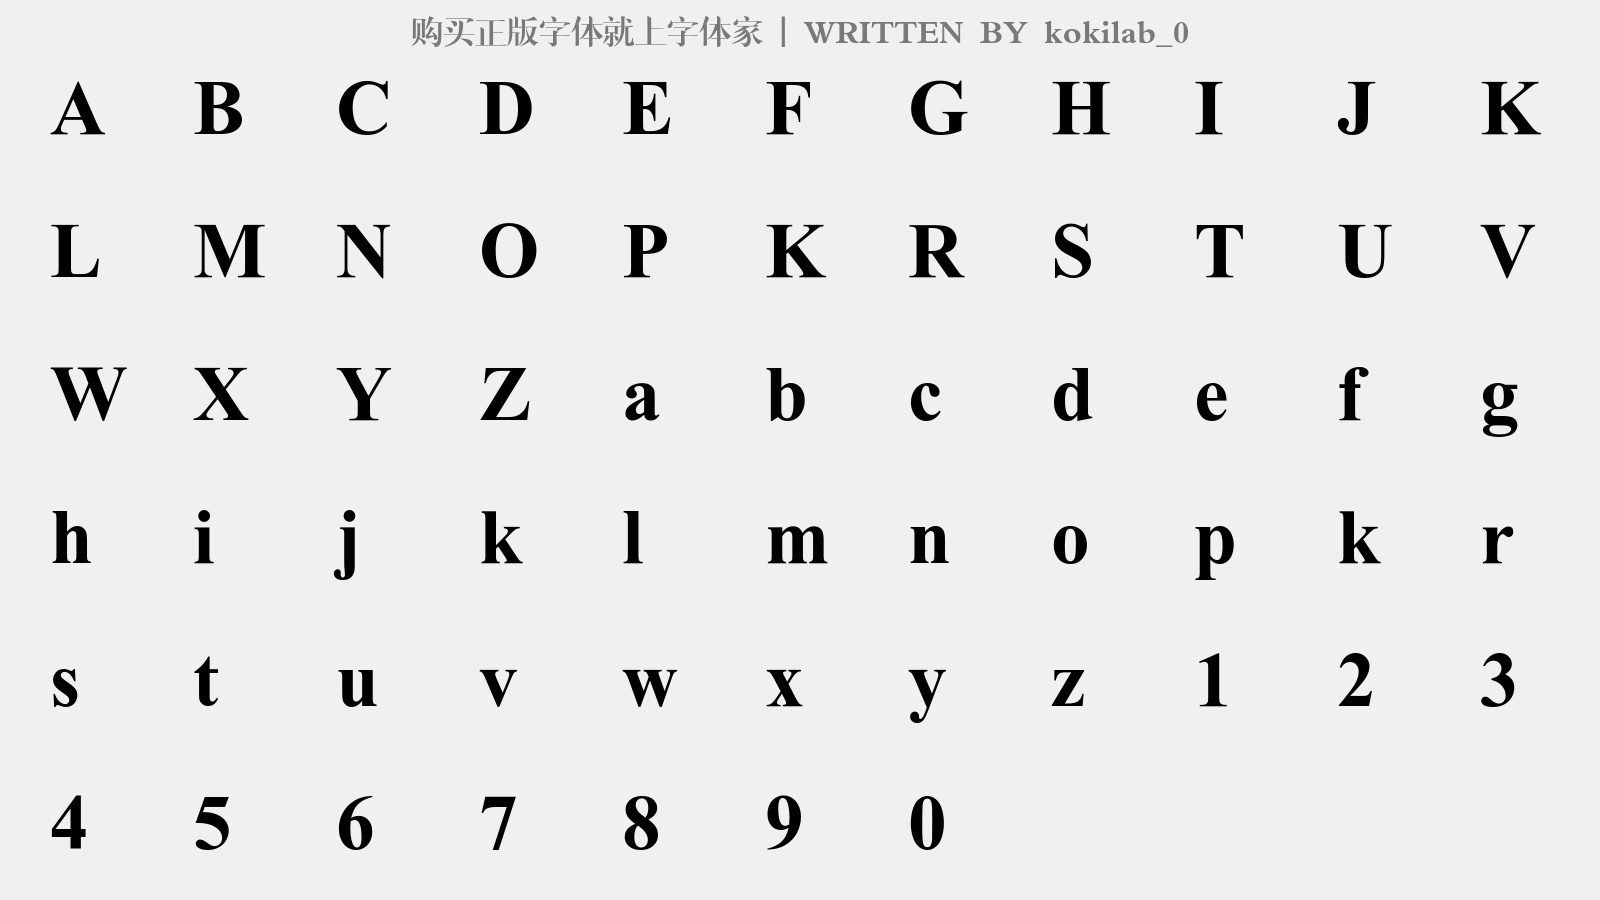 kokilab_0 - 大写字母/小写字母/数字